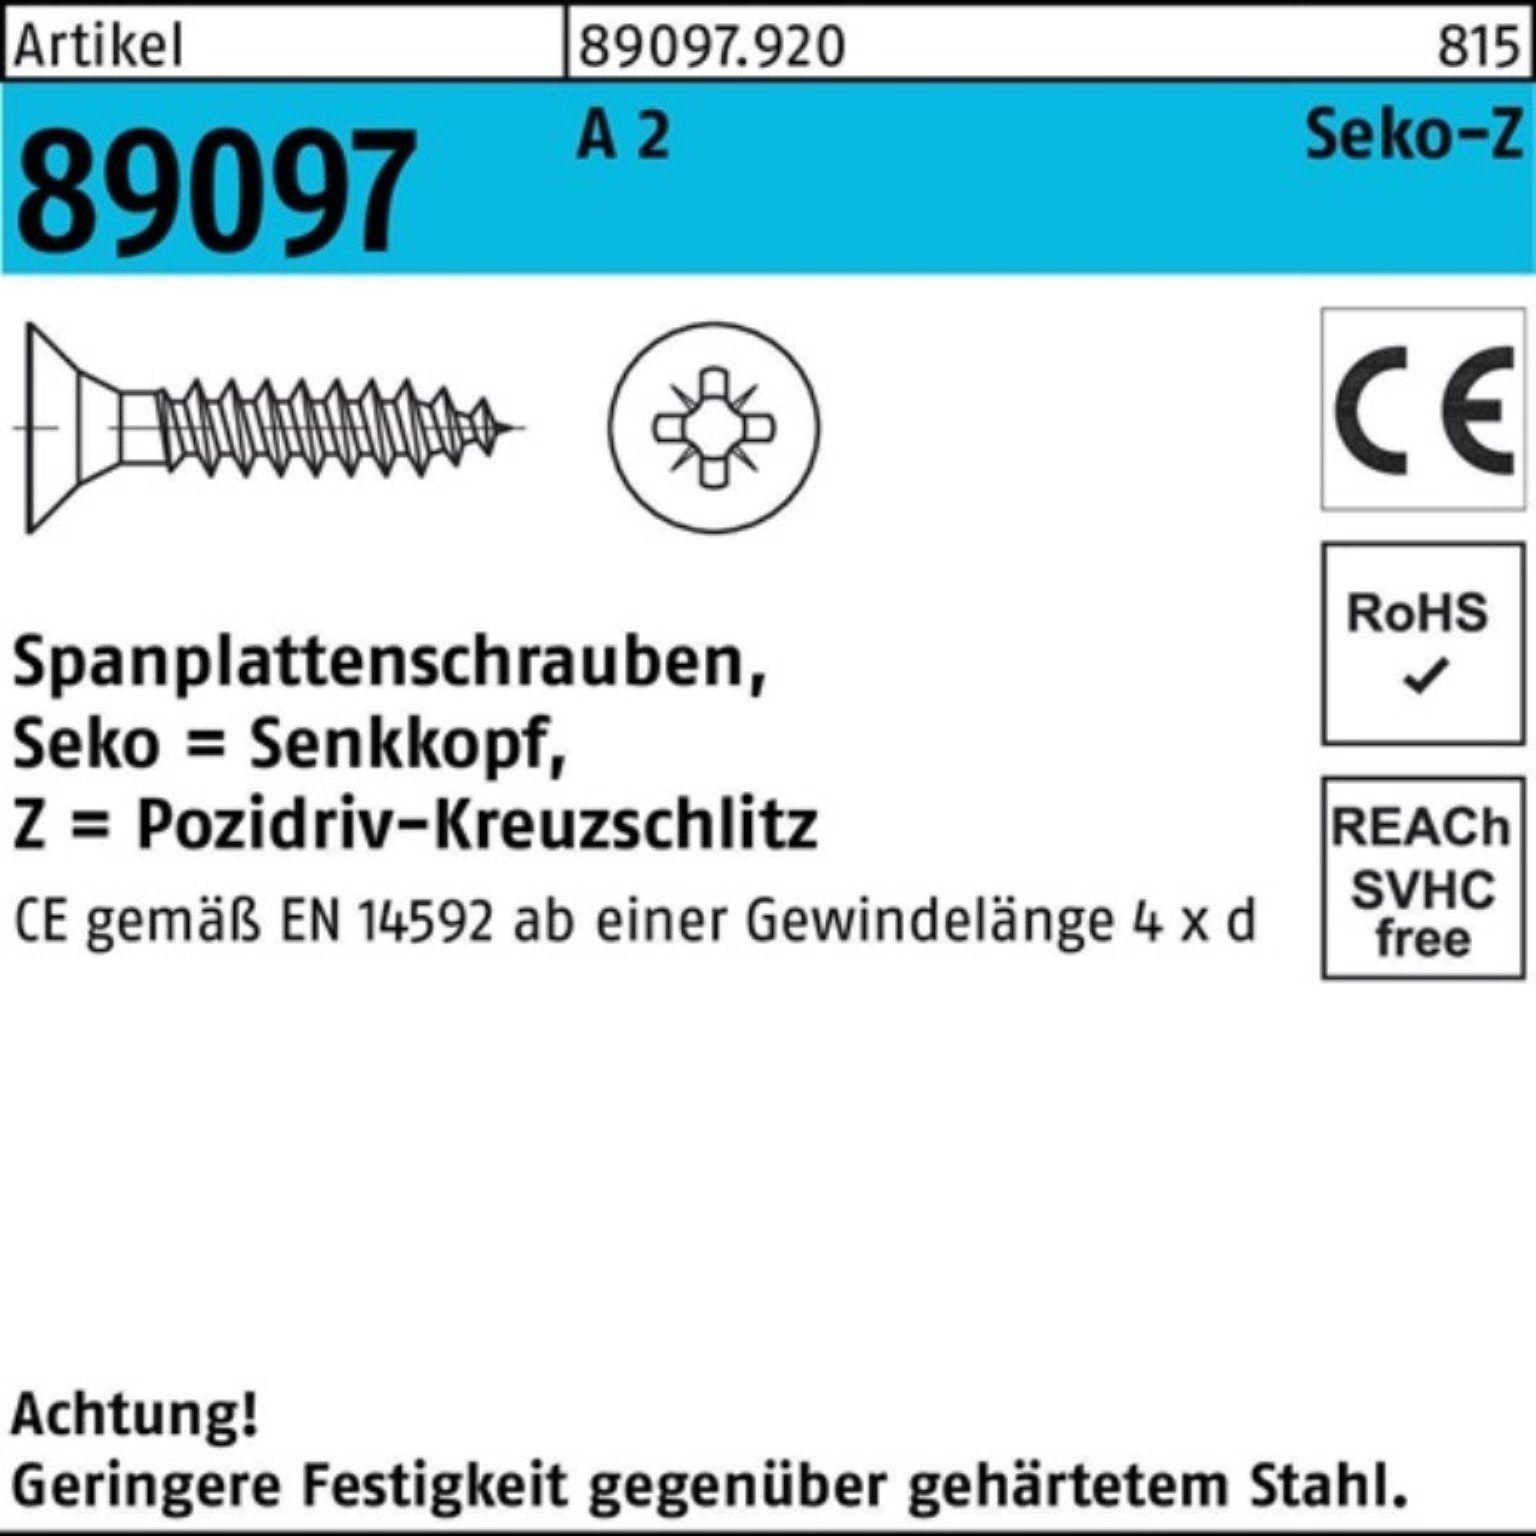 Spanplattenschraube SEKO R Spanplattenschraube 89097 Pack St 1000er A 2 1000 PZ 50-Z VG 4x Reyher